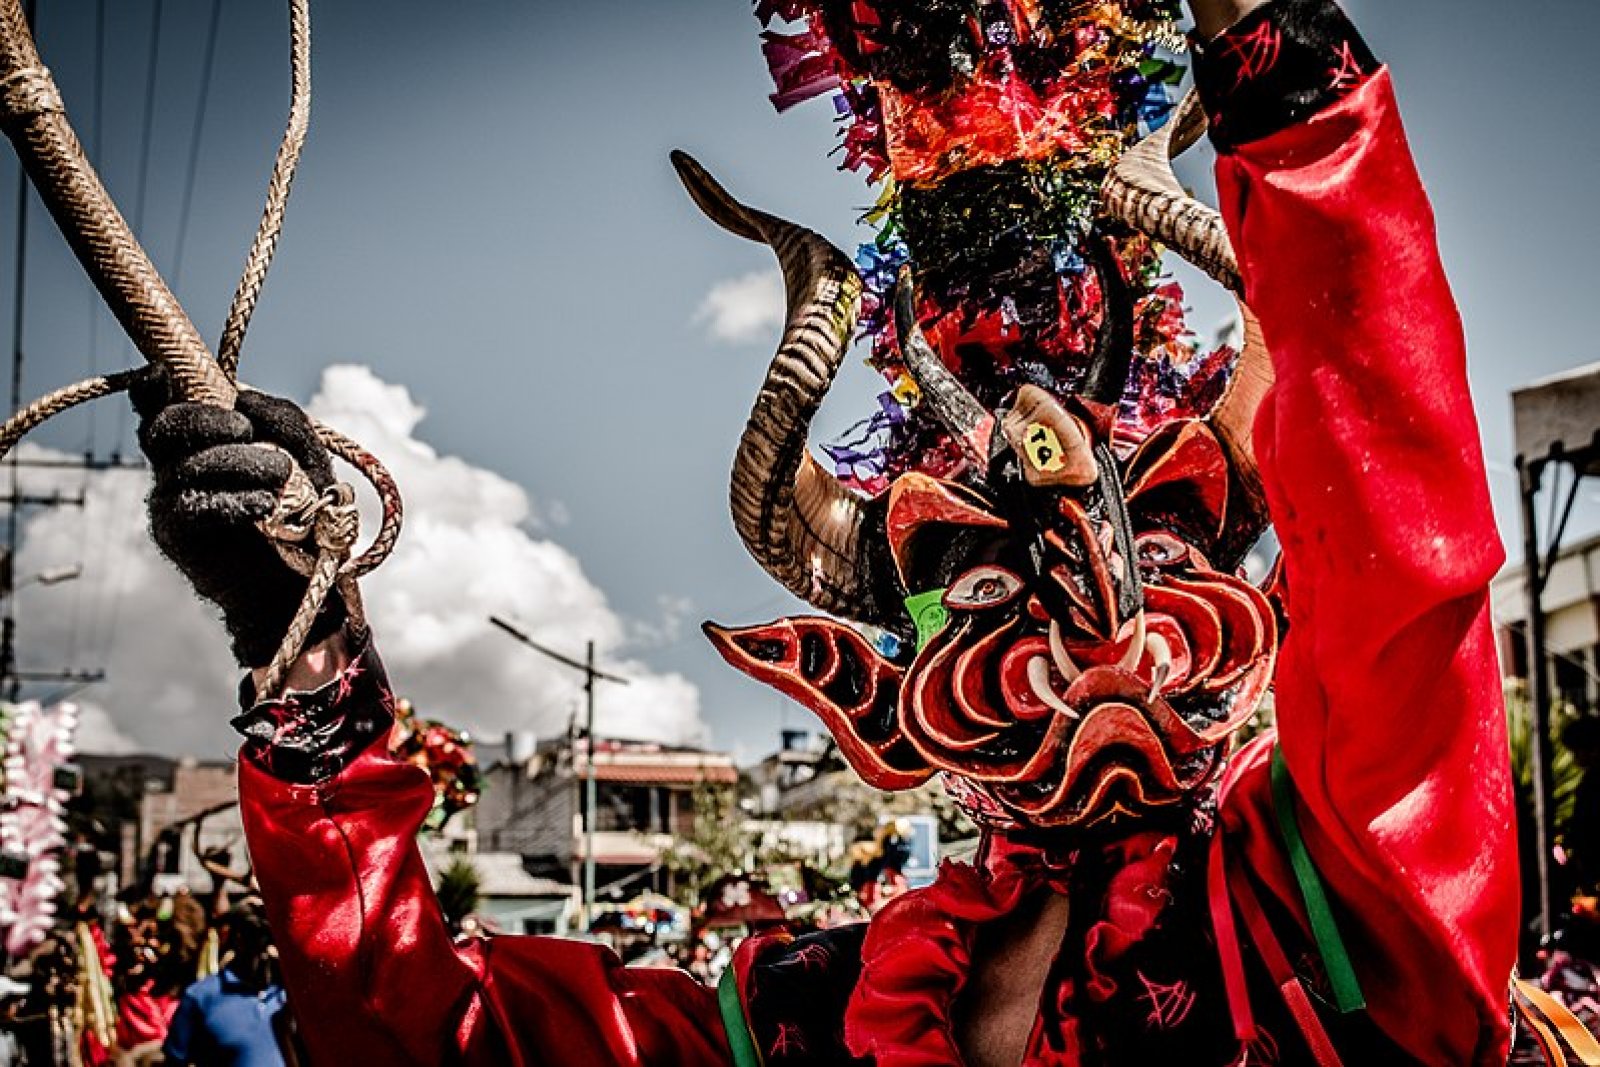 Festival Diablada de Pillaro, province de Tungurahua (Équateur) - crédits photo GoEcuador